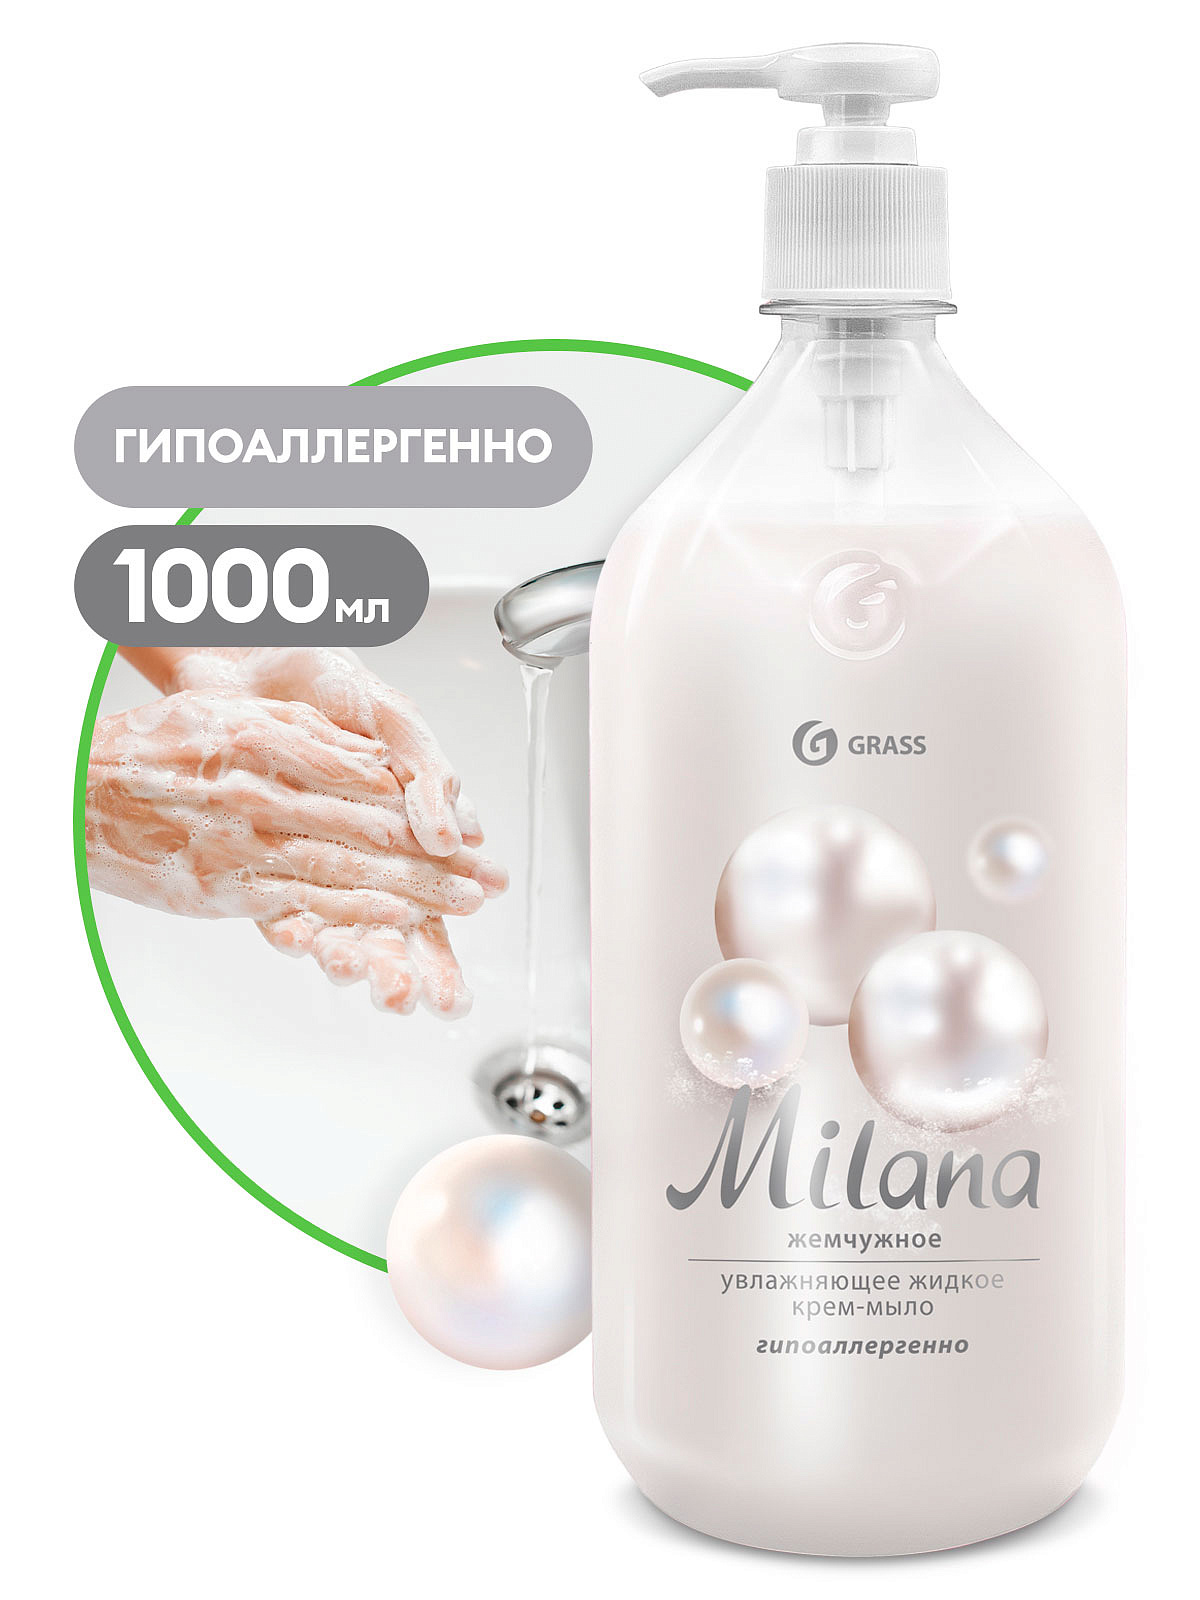 1 Жидкое крем-мыло Milana жемчужное с дозатором (флакон 1000 мл)